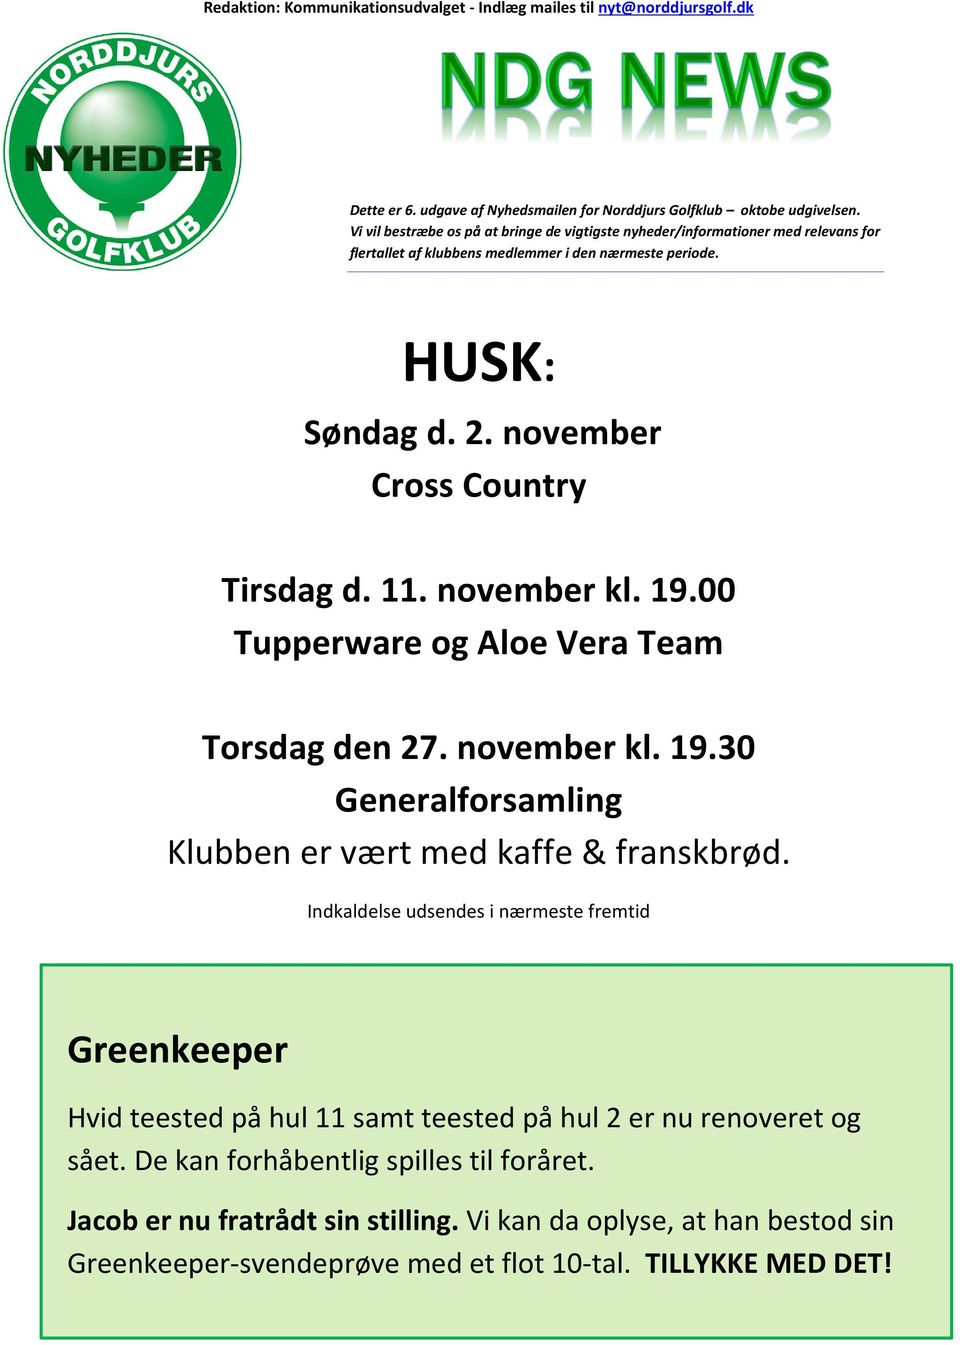 november kl. 19.00 Tupperware og Aloe Vera Team Torsdag den 27. november kl. 19.30 Generalforsamling Klubben er vært med kaffe & franskbrød.